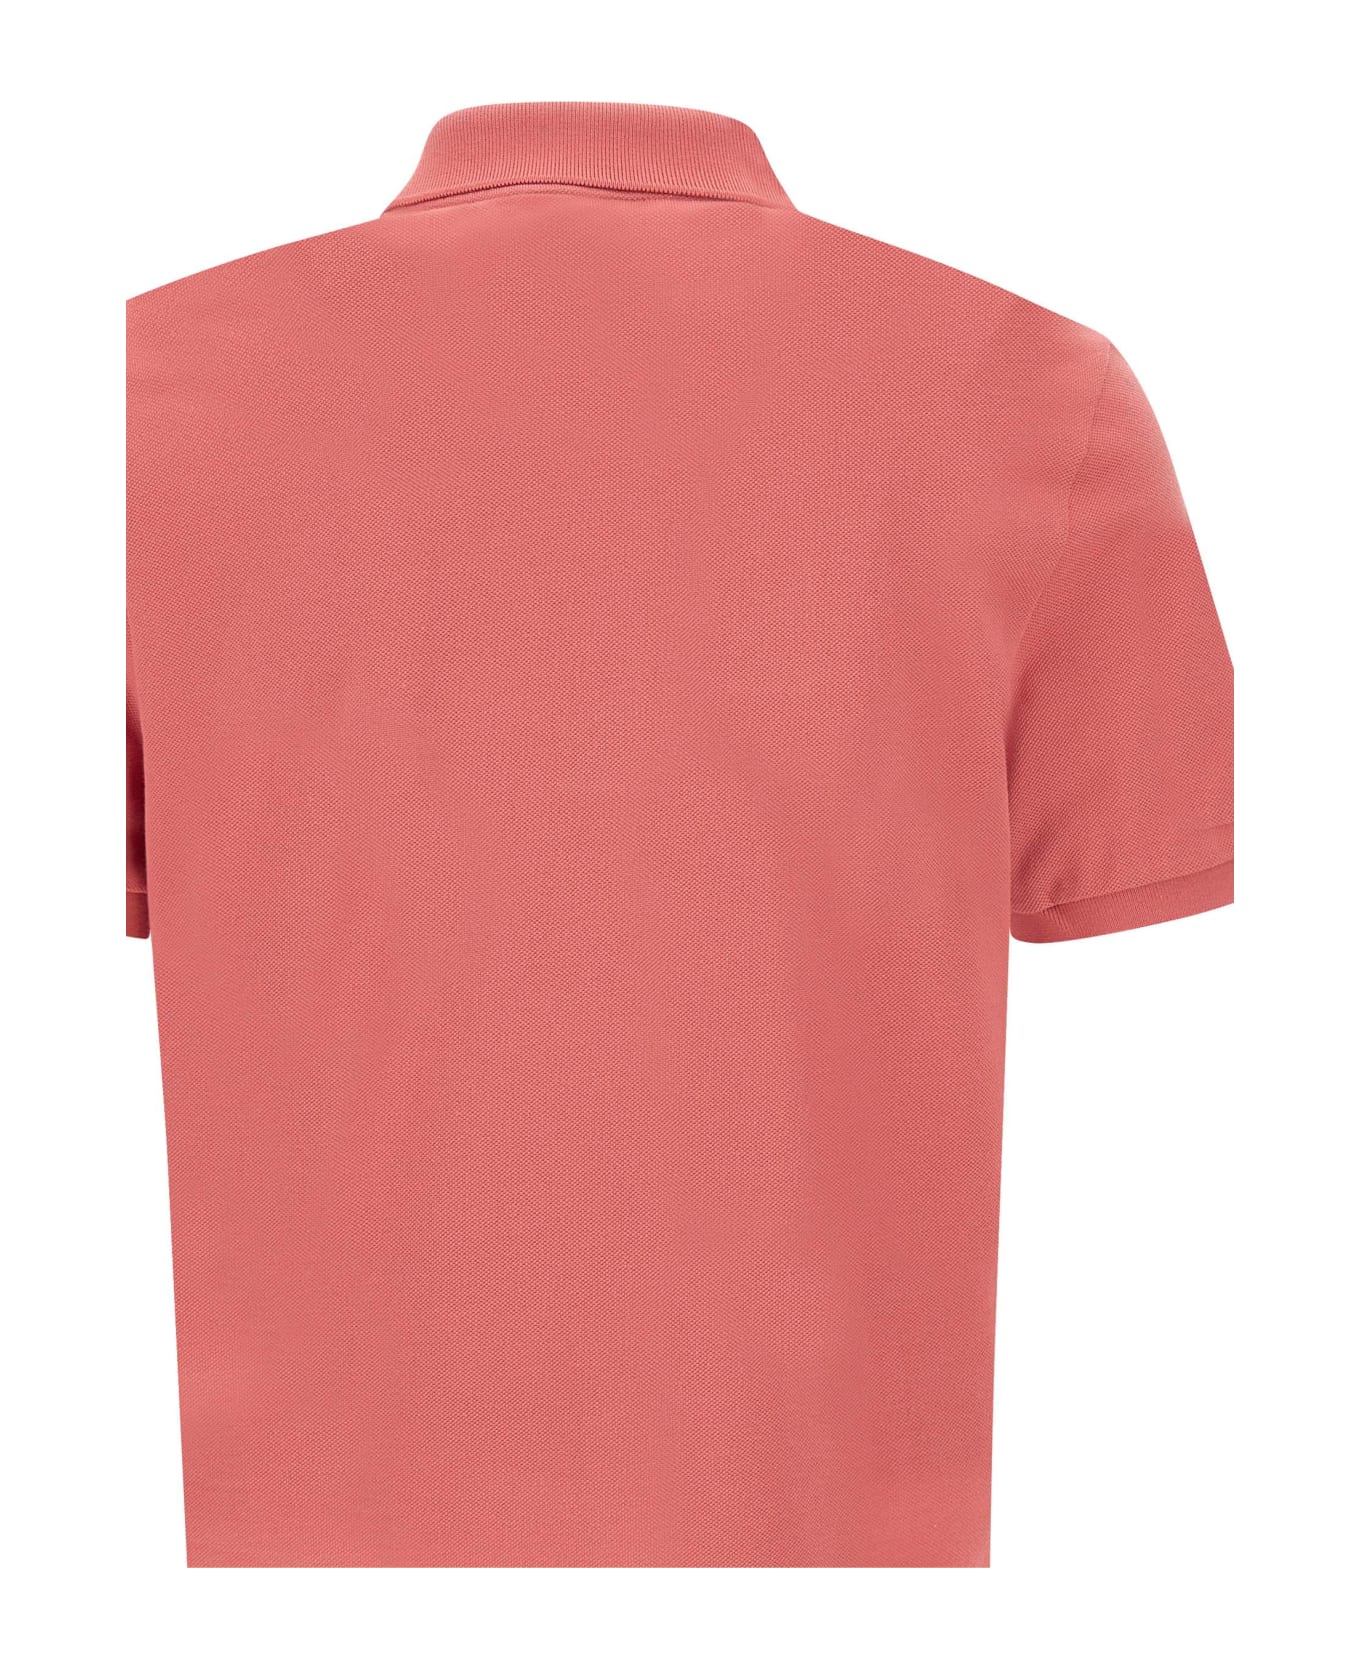 Lacoste Cotton Piquet Polo Shirt - ORANGE ポロシャツ